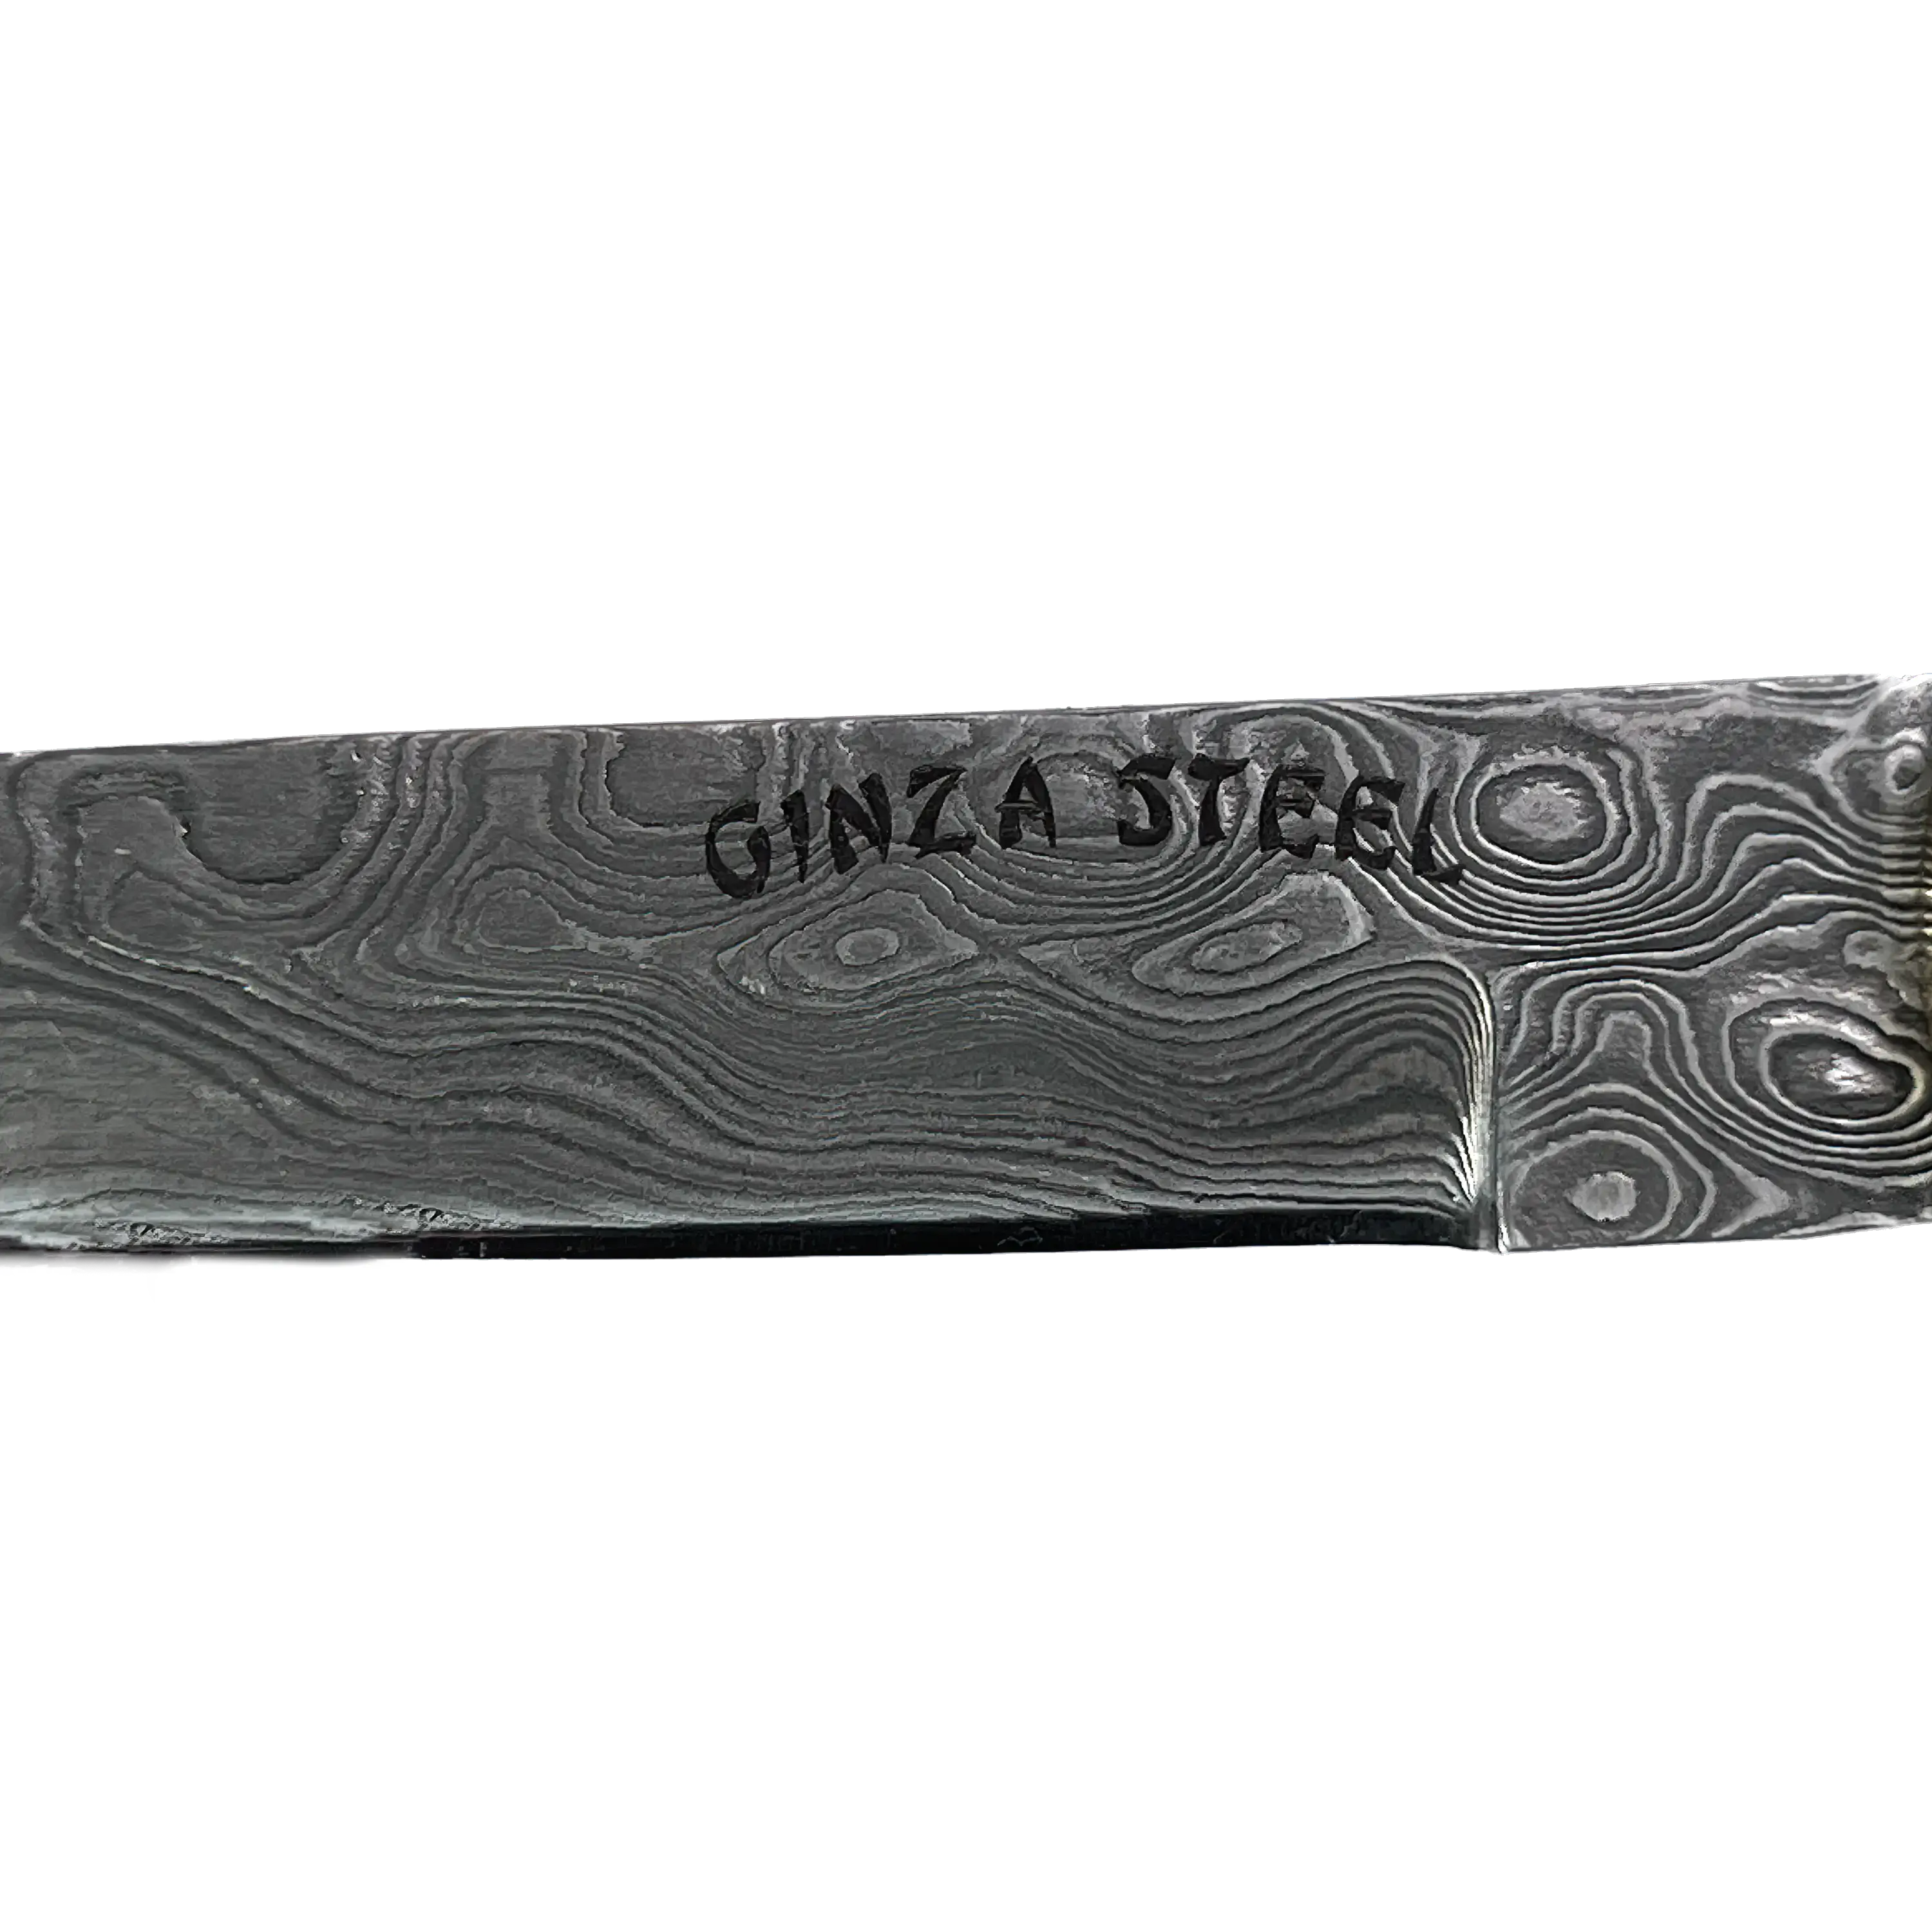 AKARI Skinner Black Knife 3.5 inch with Original Leather Sheath